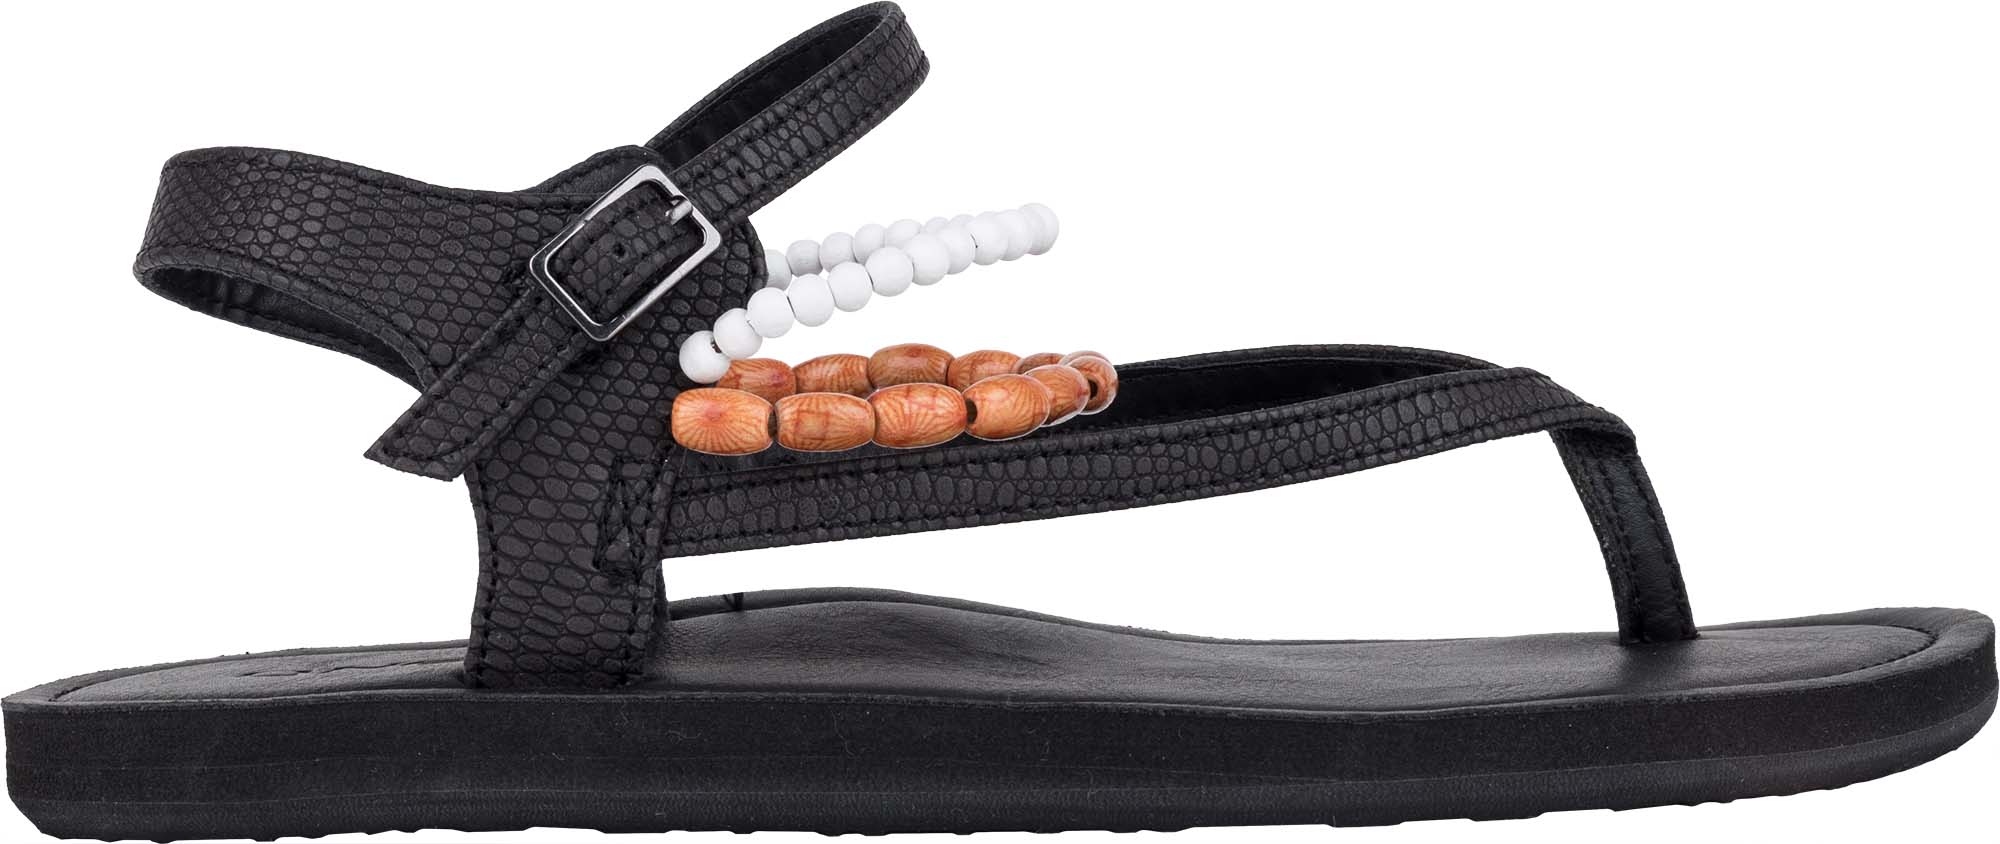 Sandale damă